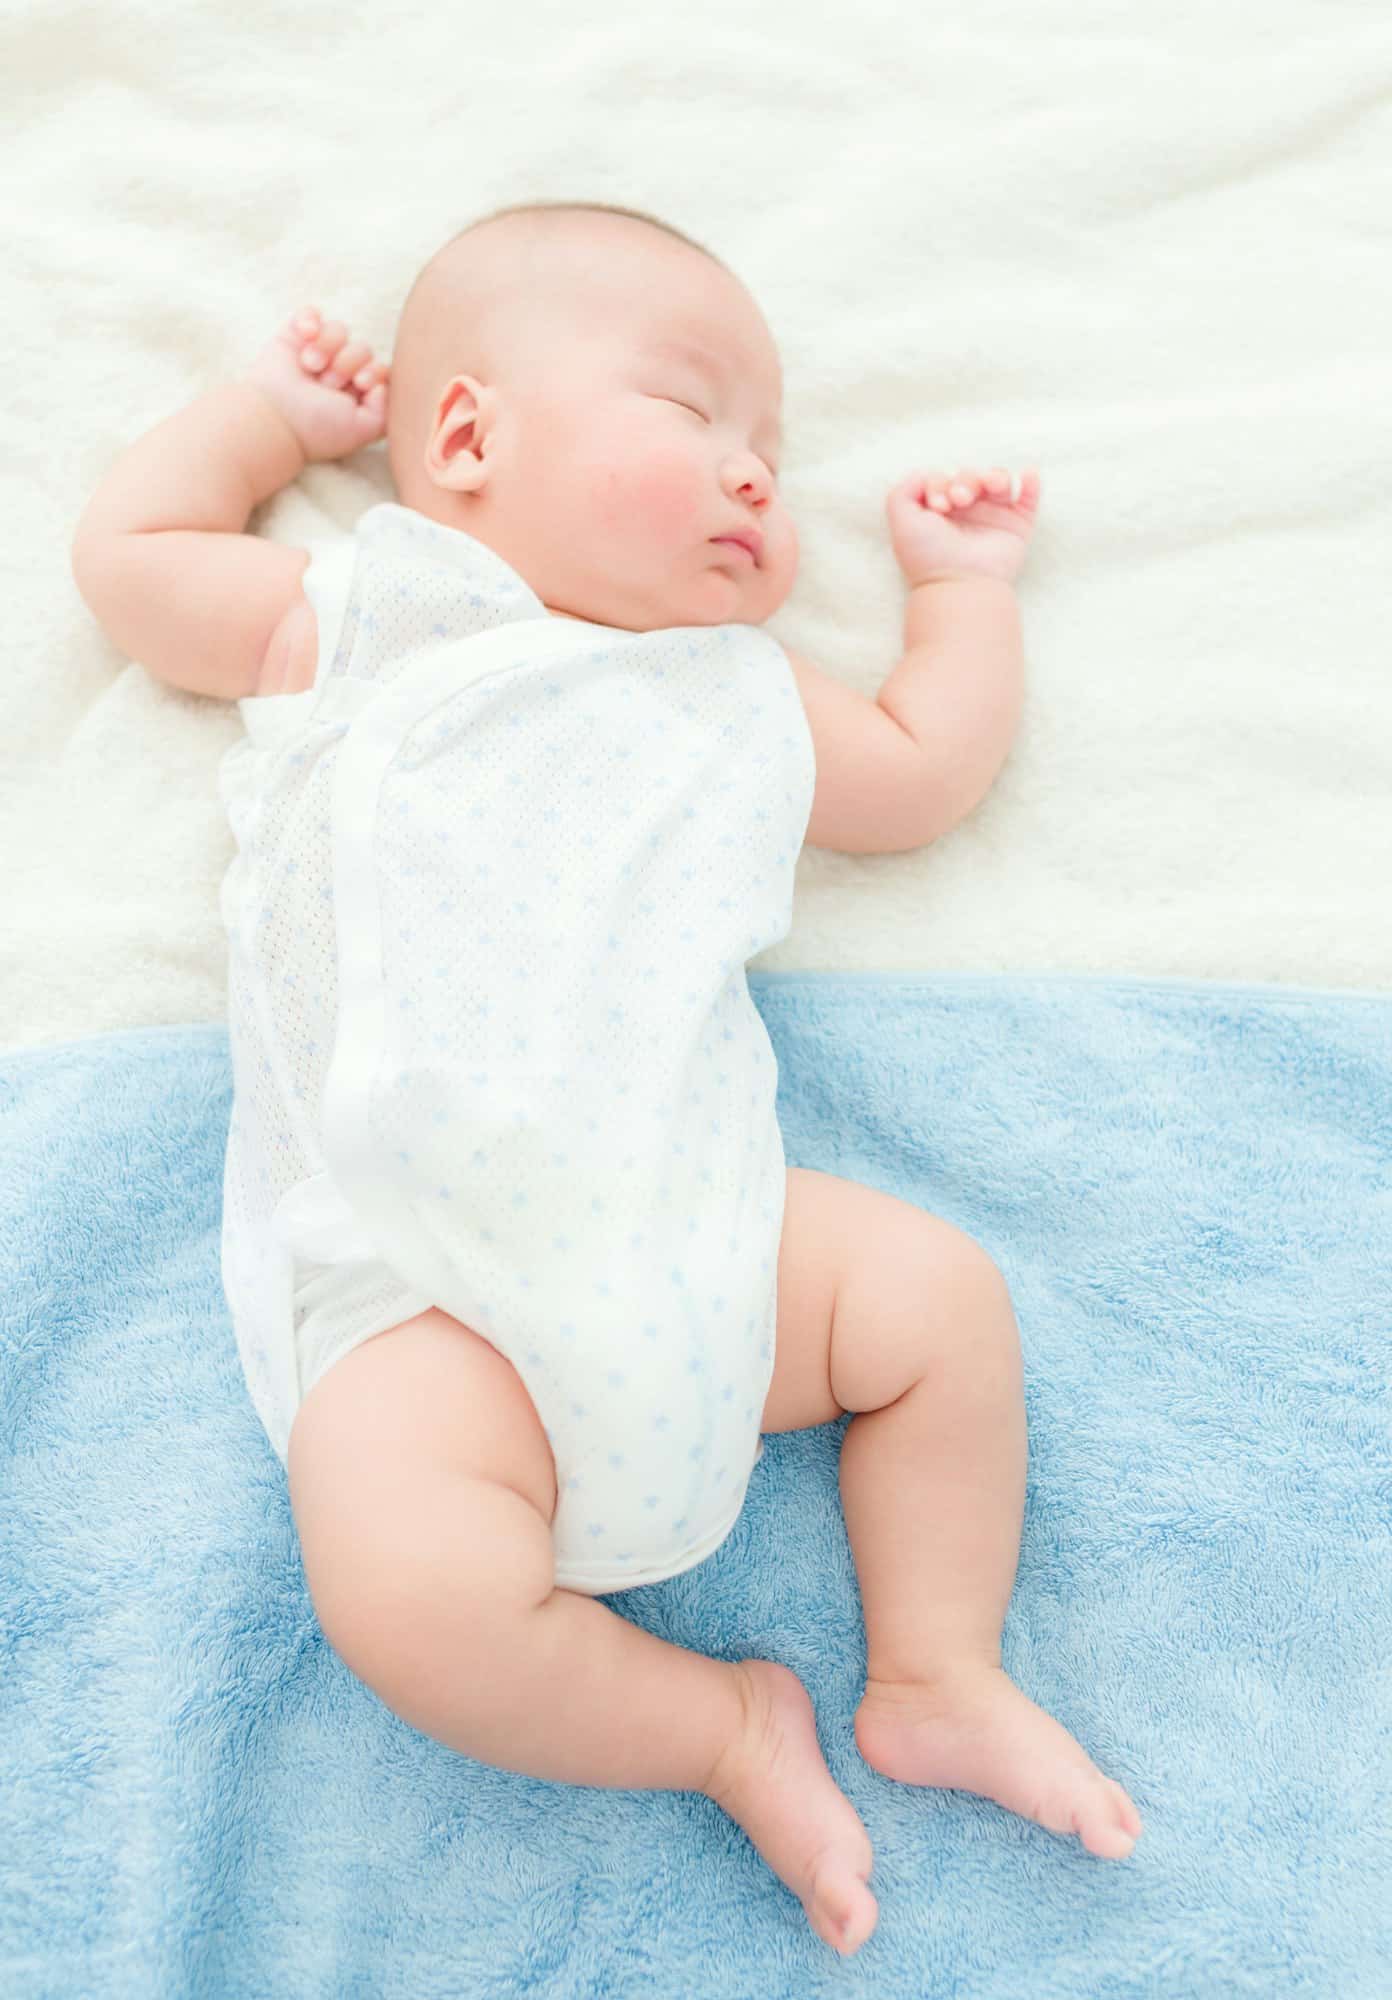 Les secrets d’un sommeil paisible pour bébé : guide pratique